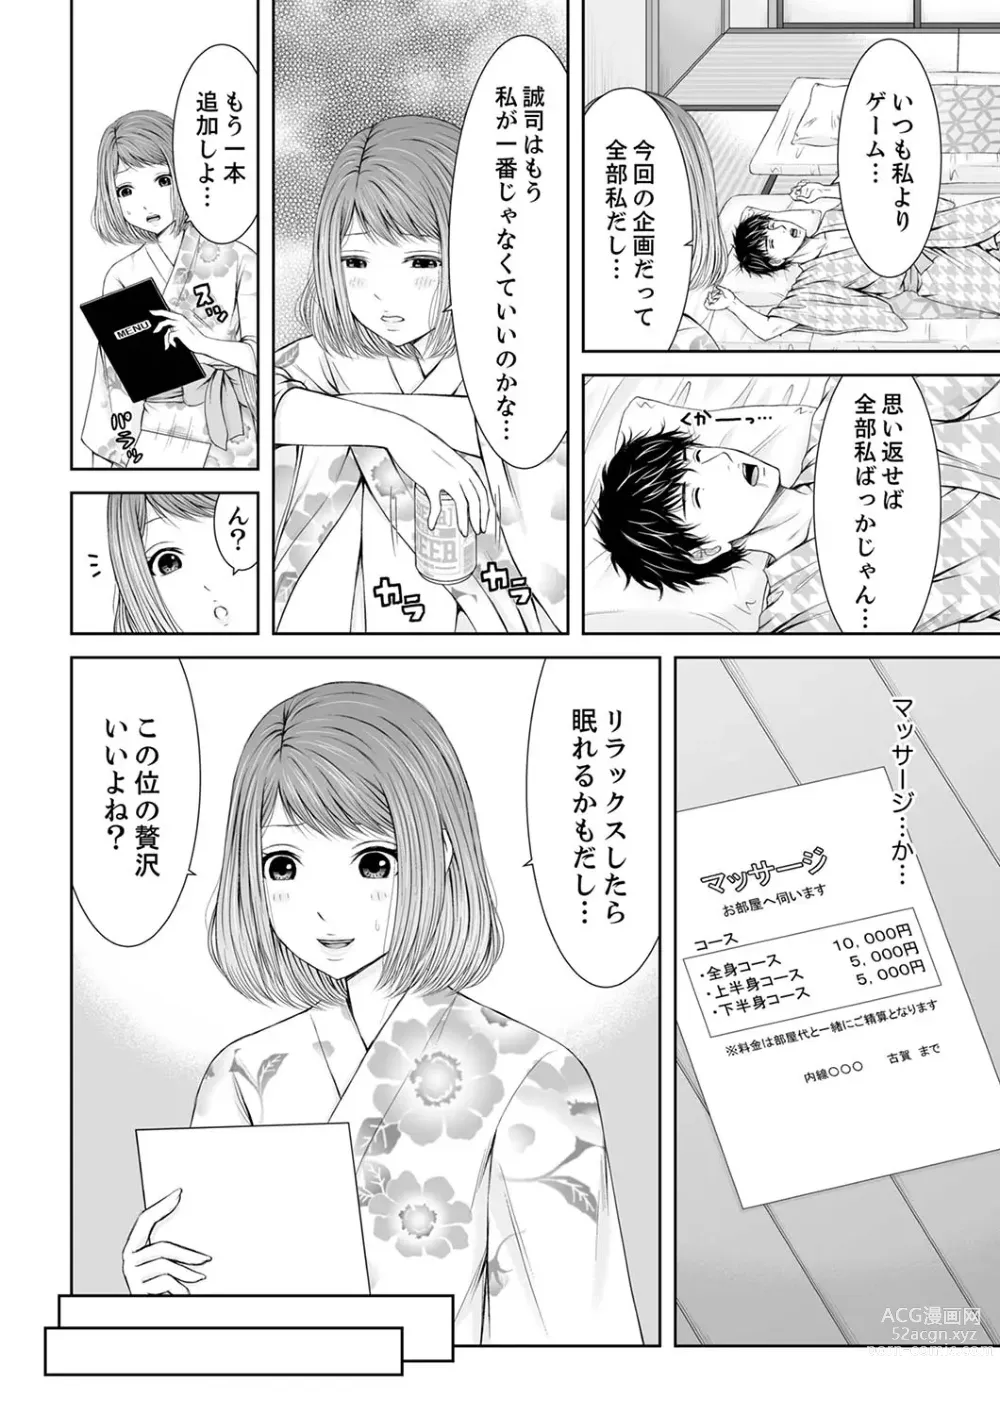 Page 8 of manga 整体師にジらされ続けた妻～夫には言えない濡れイキマッサージ【デラックス版】